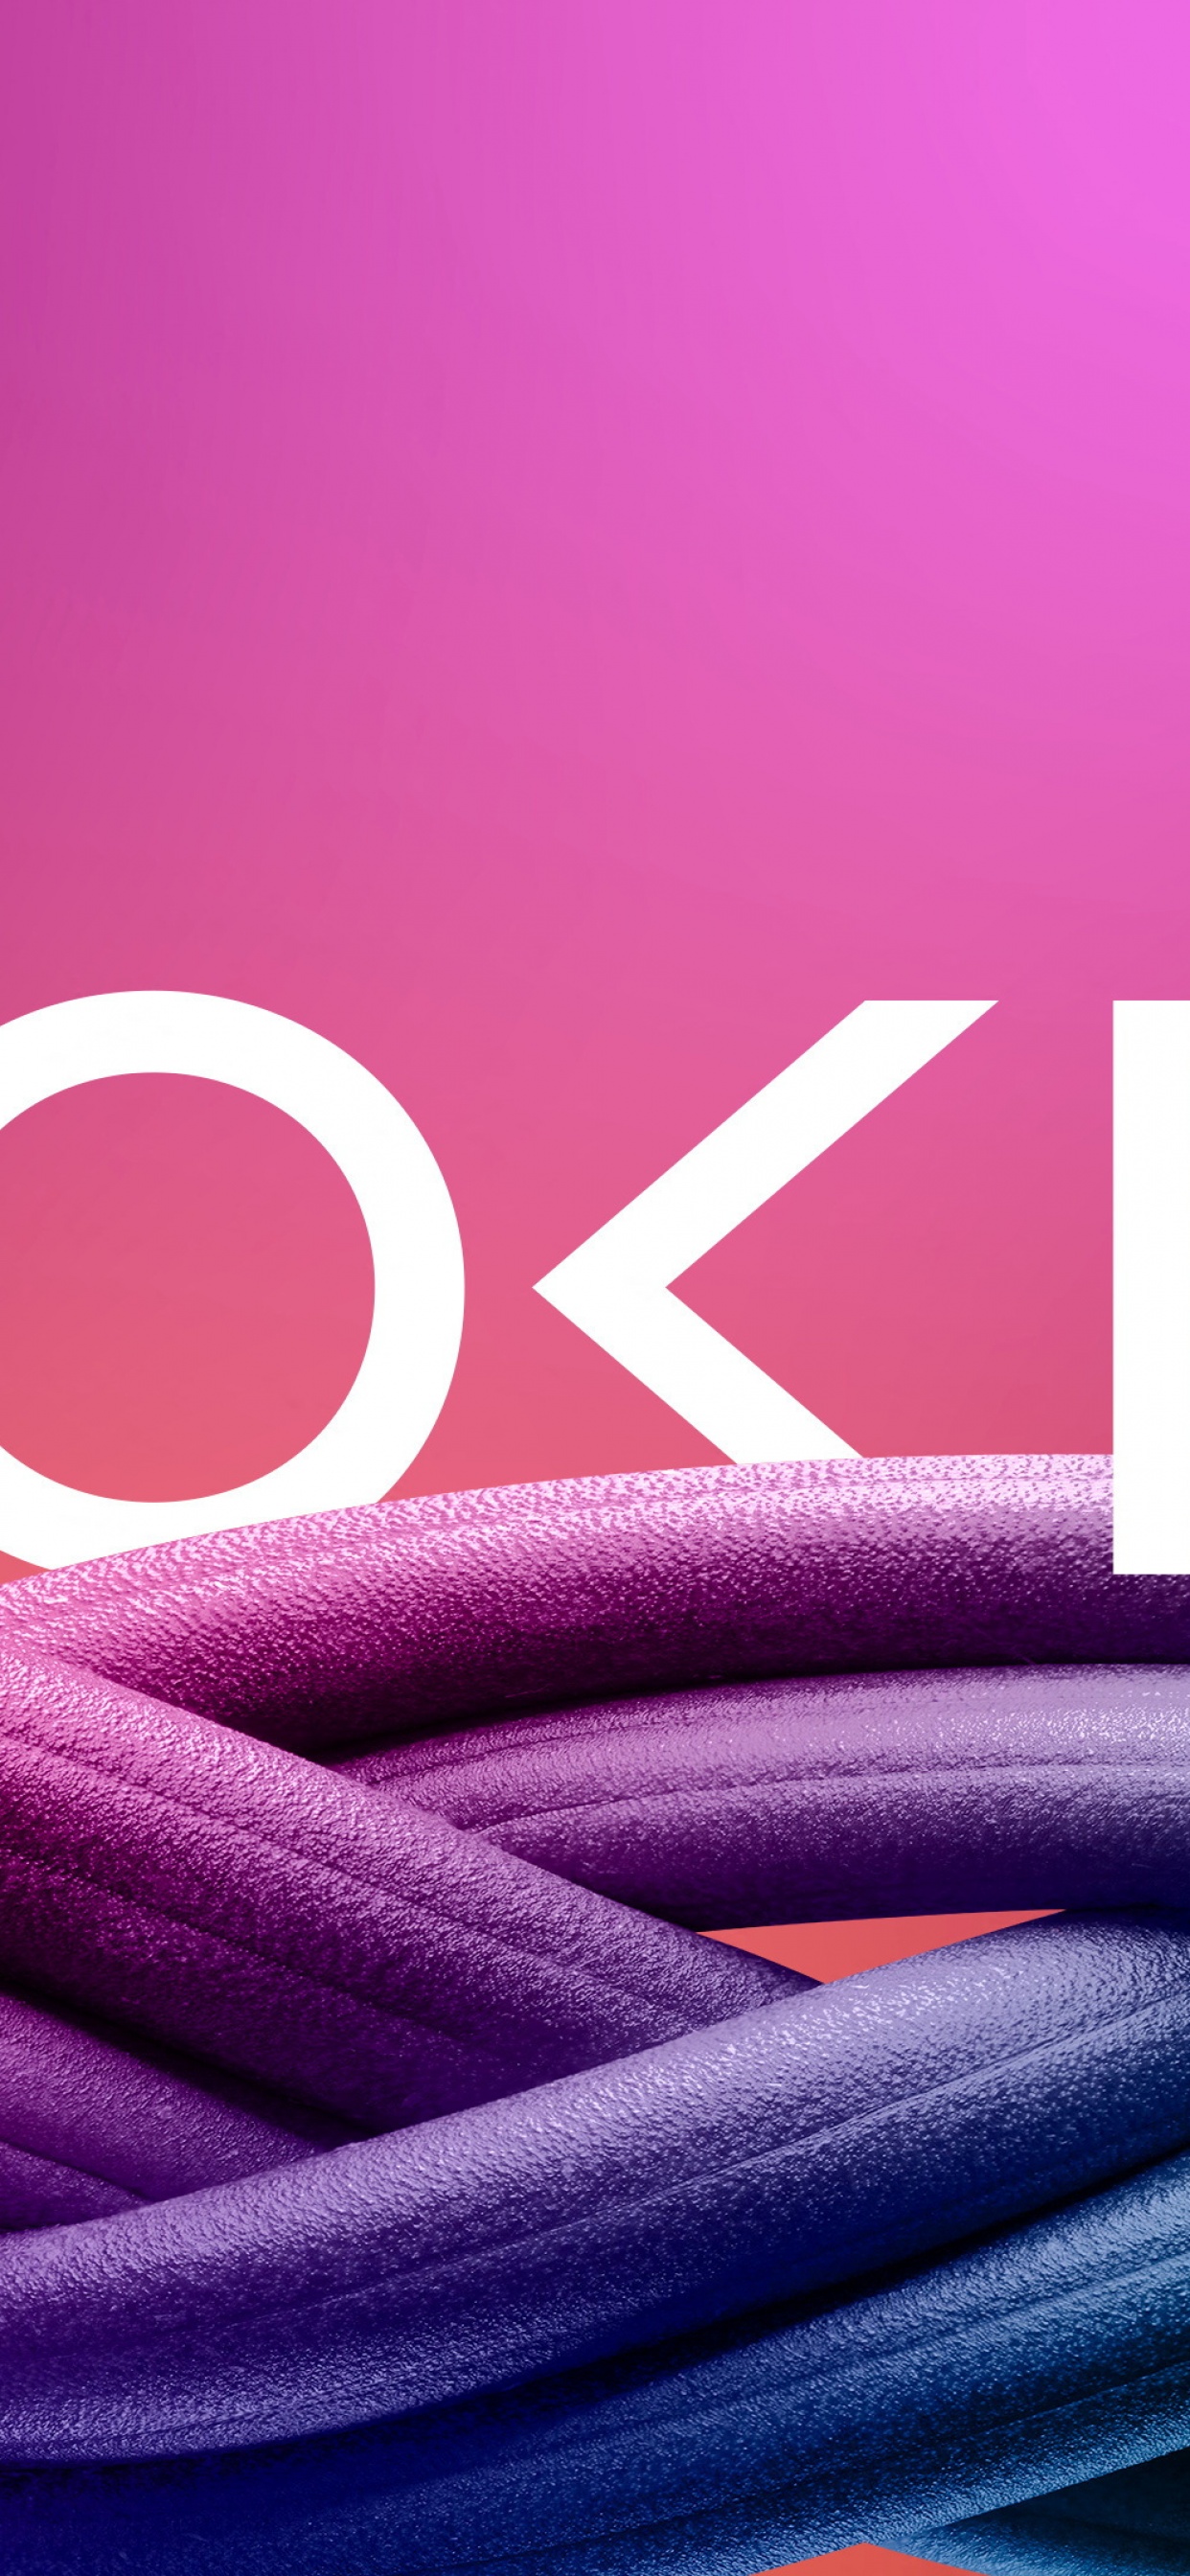 Tận hưởng không gian màn hình Nokia đầy cảm hứng với những hình ảnh hoàn toàn mới lạ và độc đáo. Hình nền Nokia 4K với logo và nền màu hồng sẽ làm cho màn hình điện thoại của bạn trở nên độc đáo và thêm phần thanh lịch.